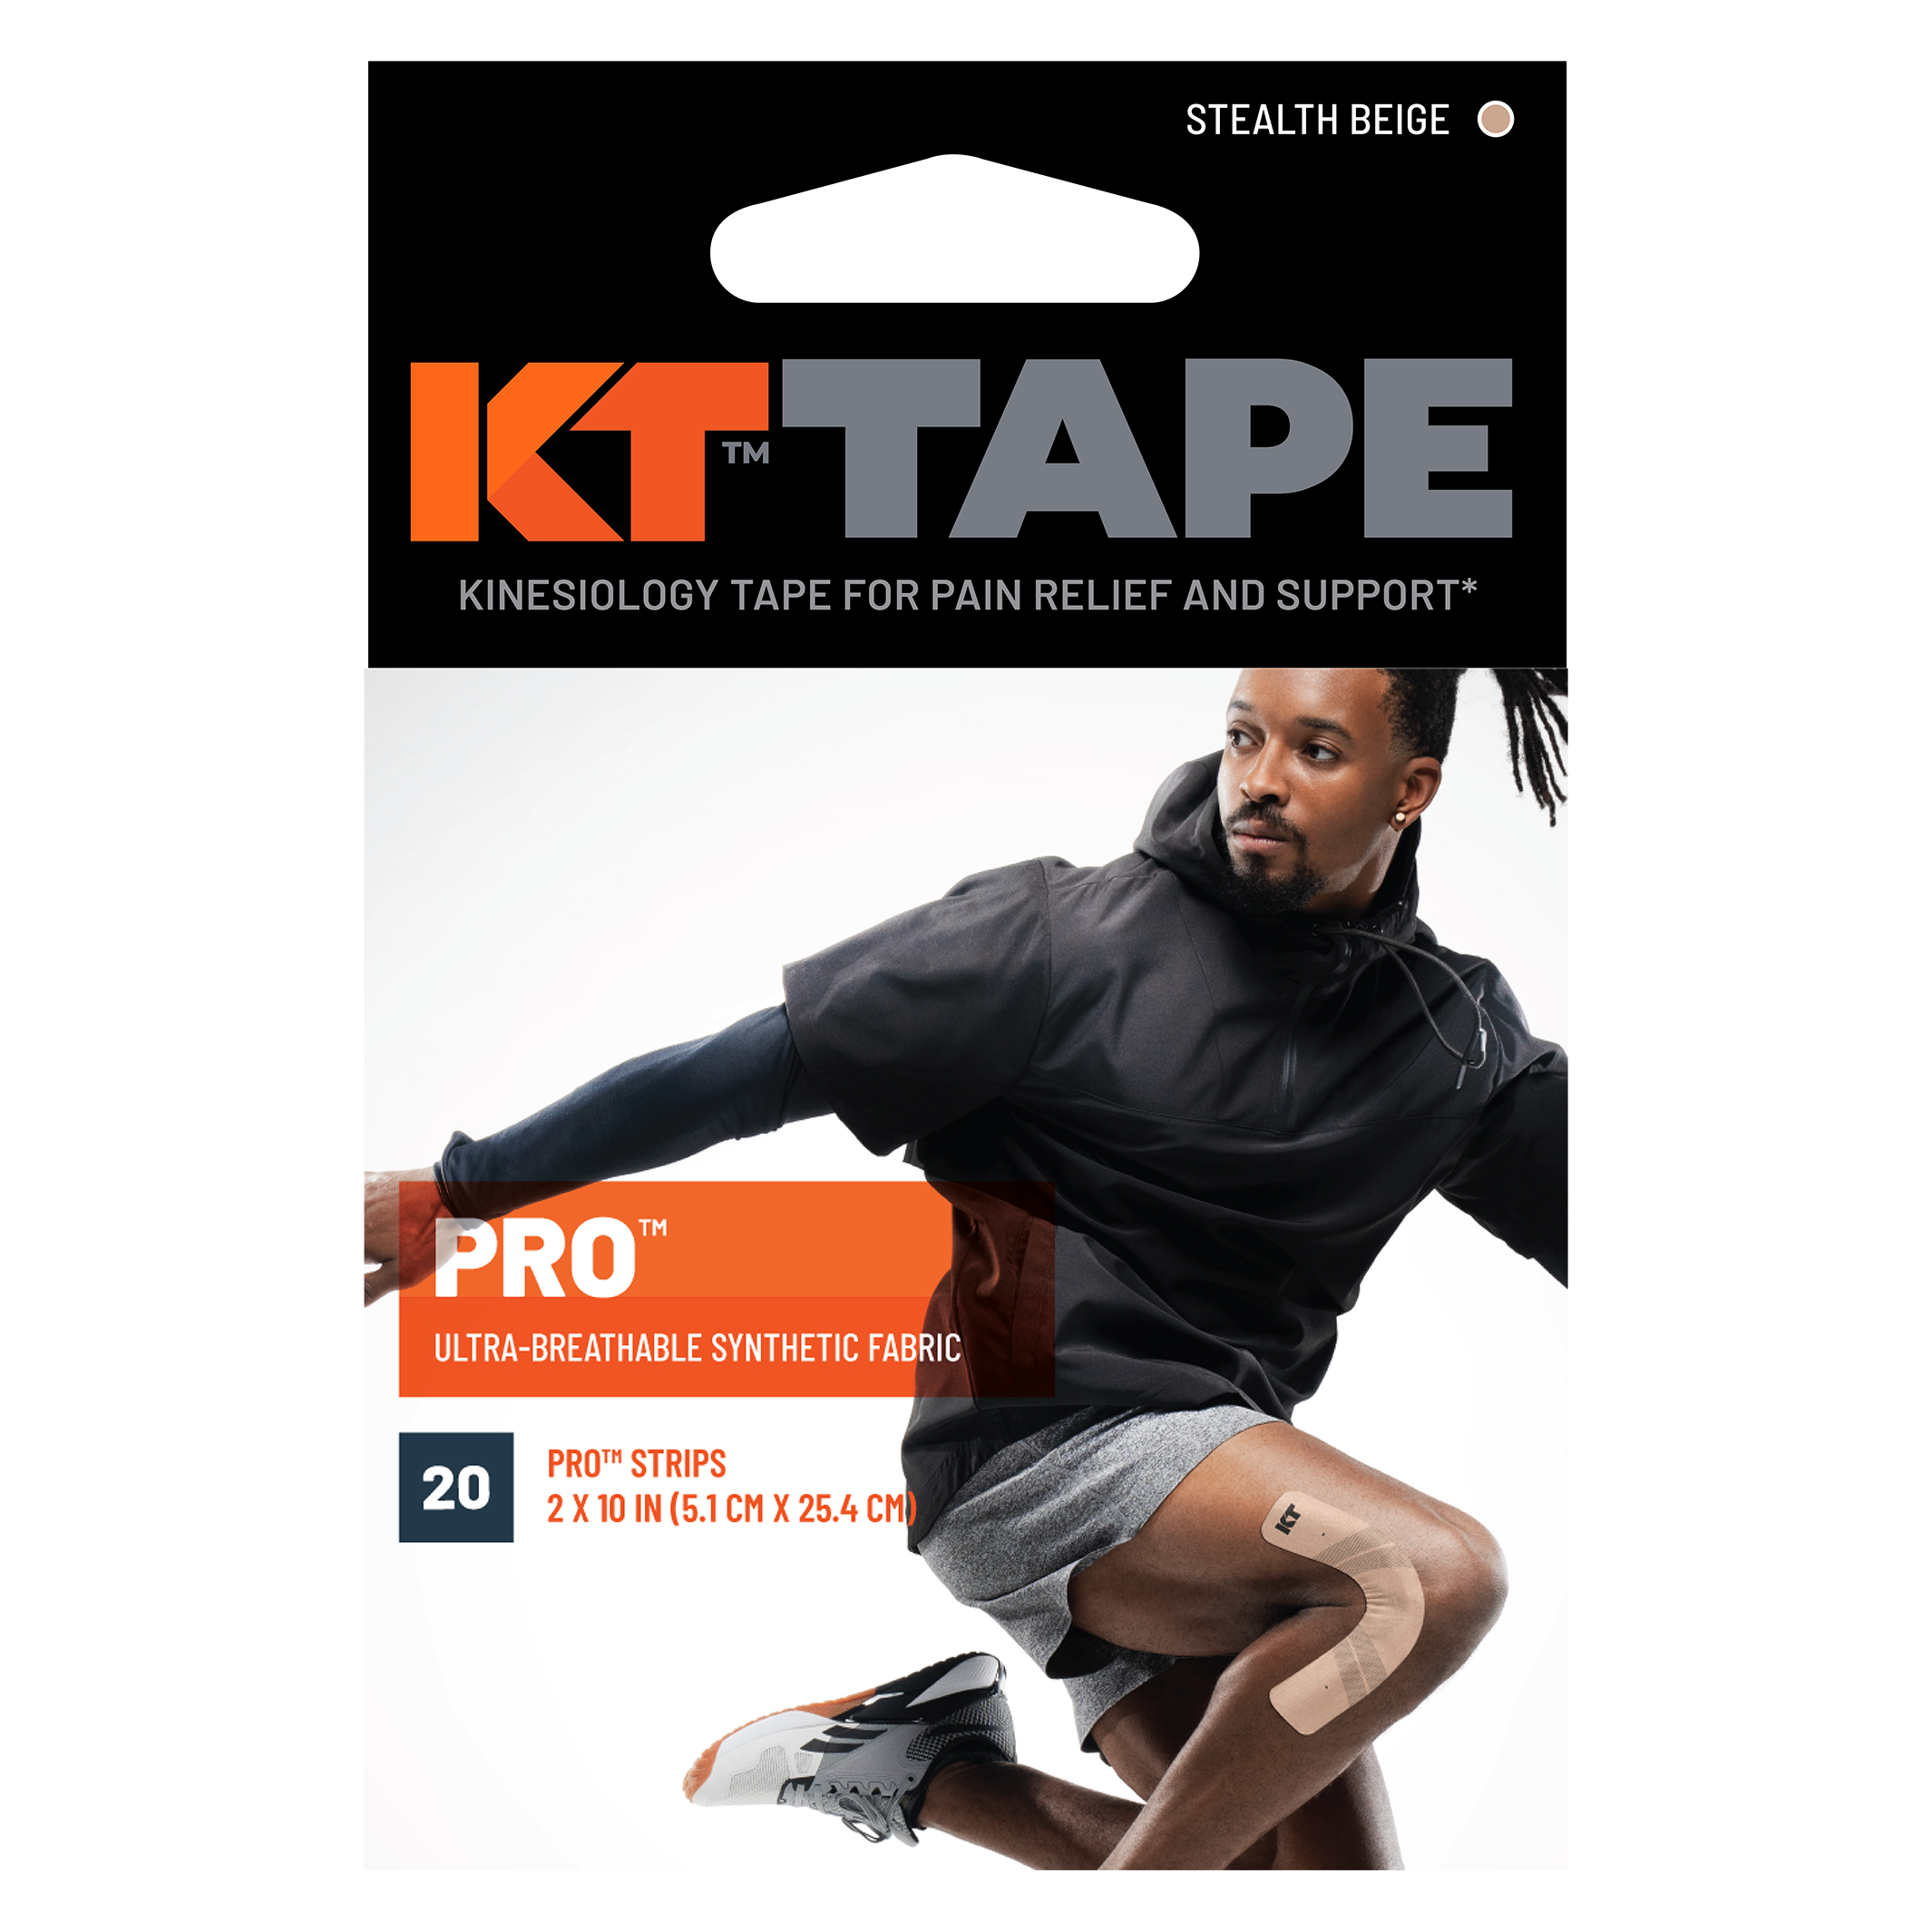 KT Tape Pro packaging#color_stealth-beige